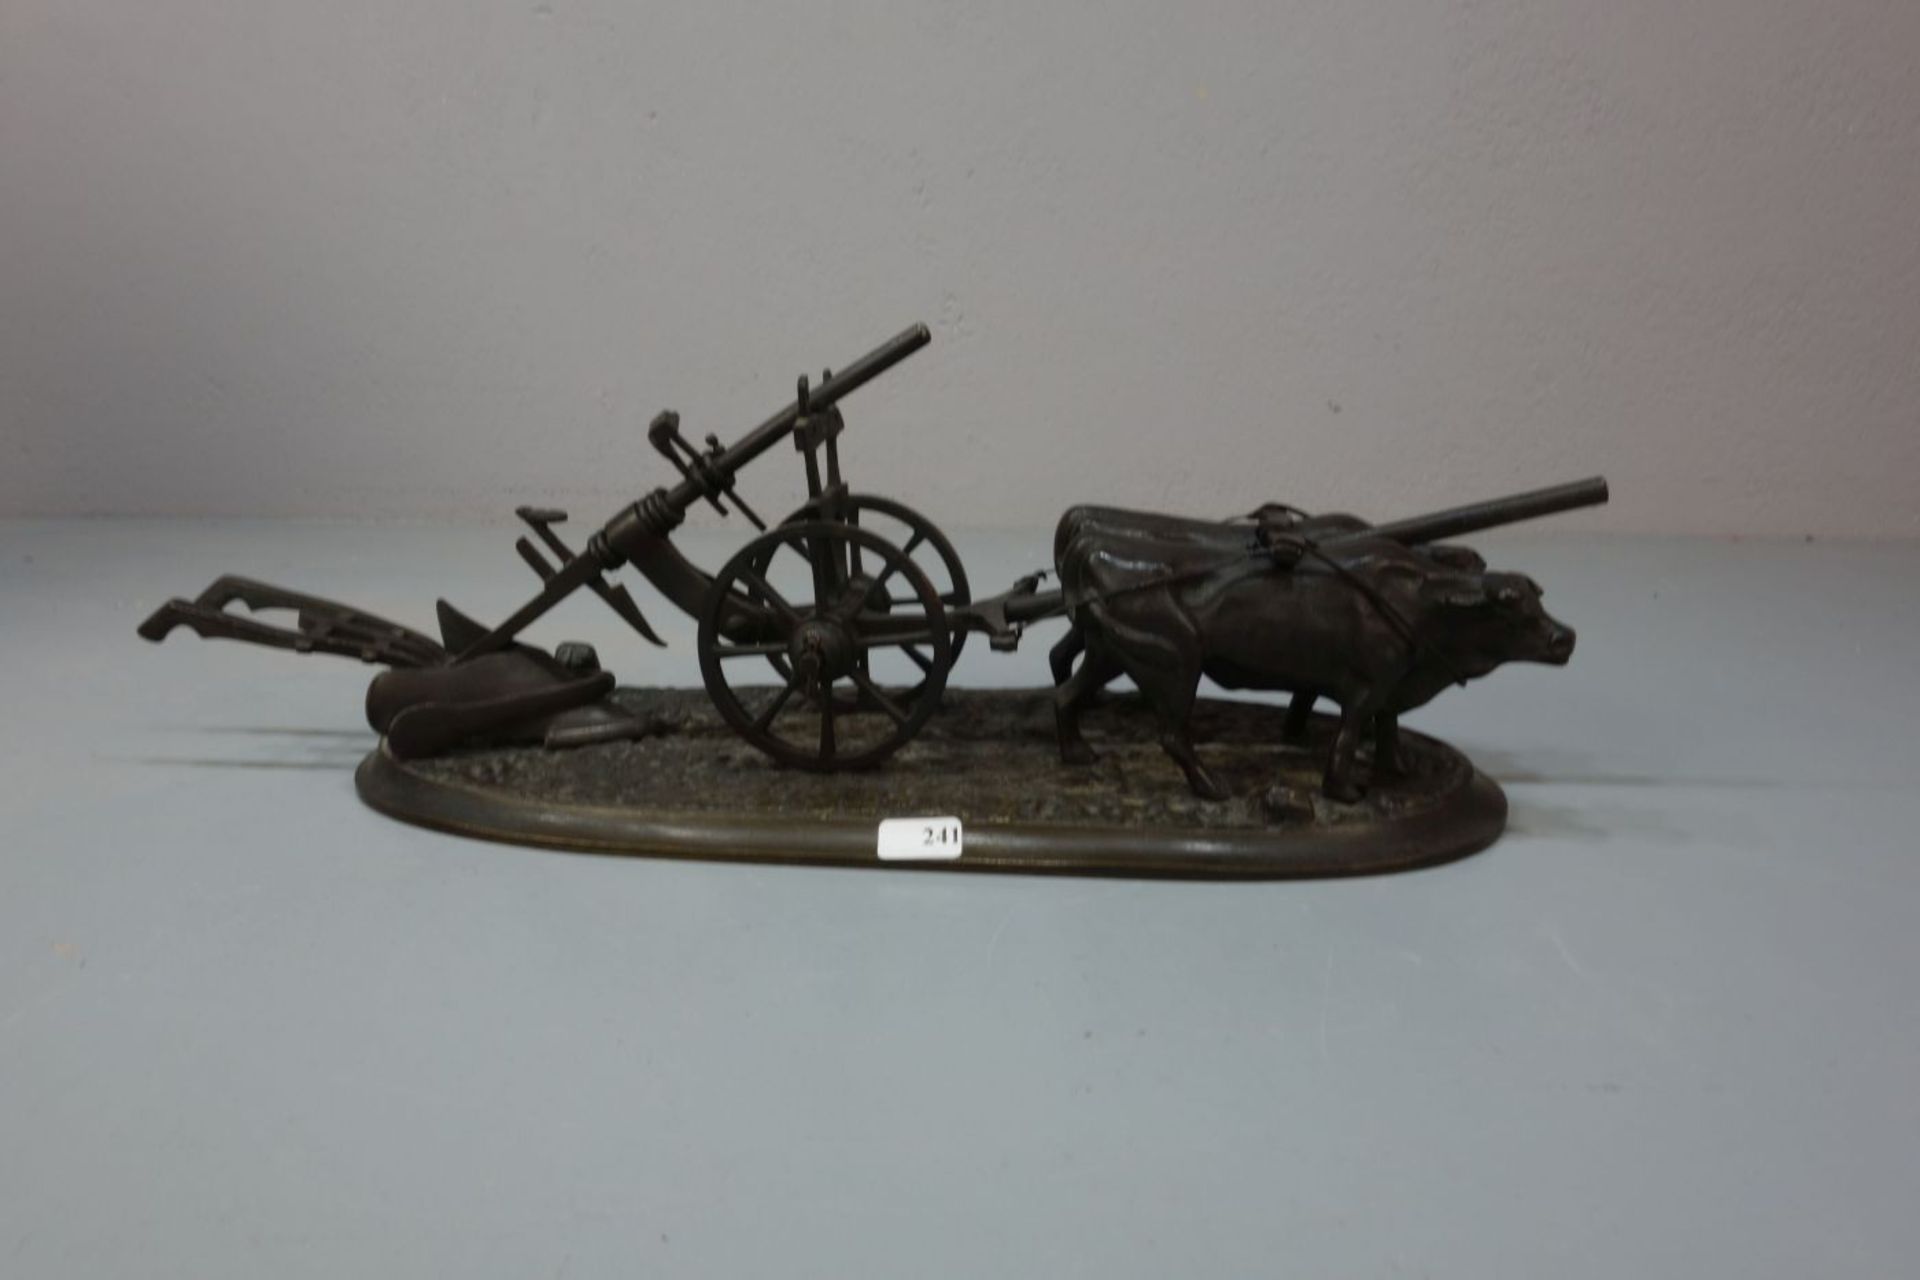 BILDHAUER / ANIMALIER / TIERBILDHAUER DES 19./20. Jh., Skulptur / sculpture: "Ochsengespann mit